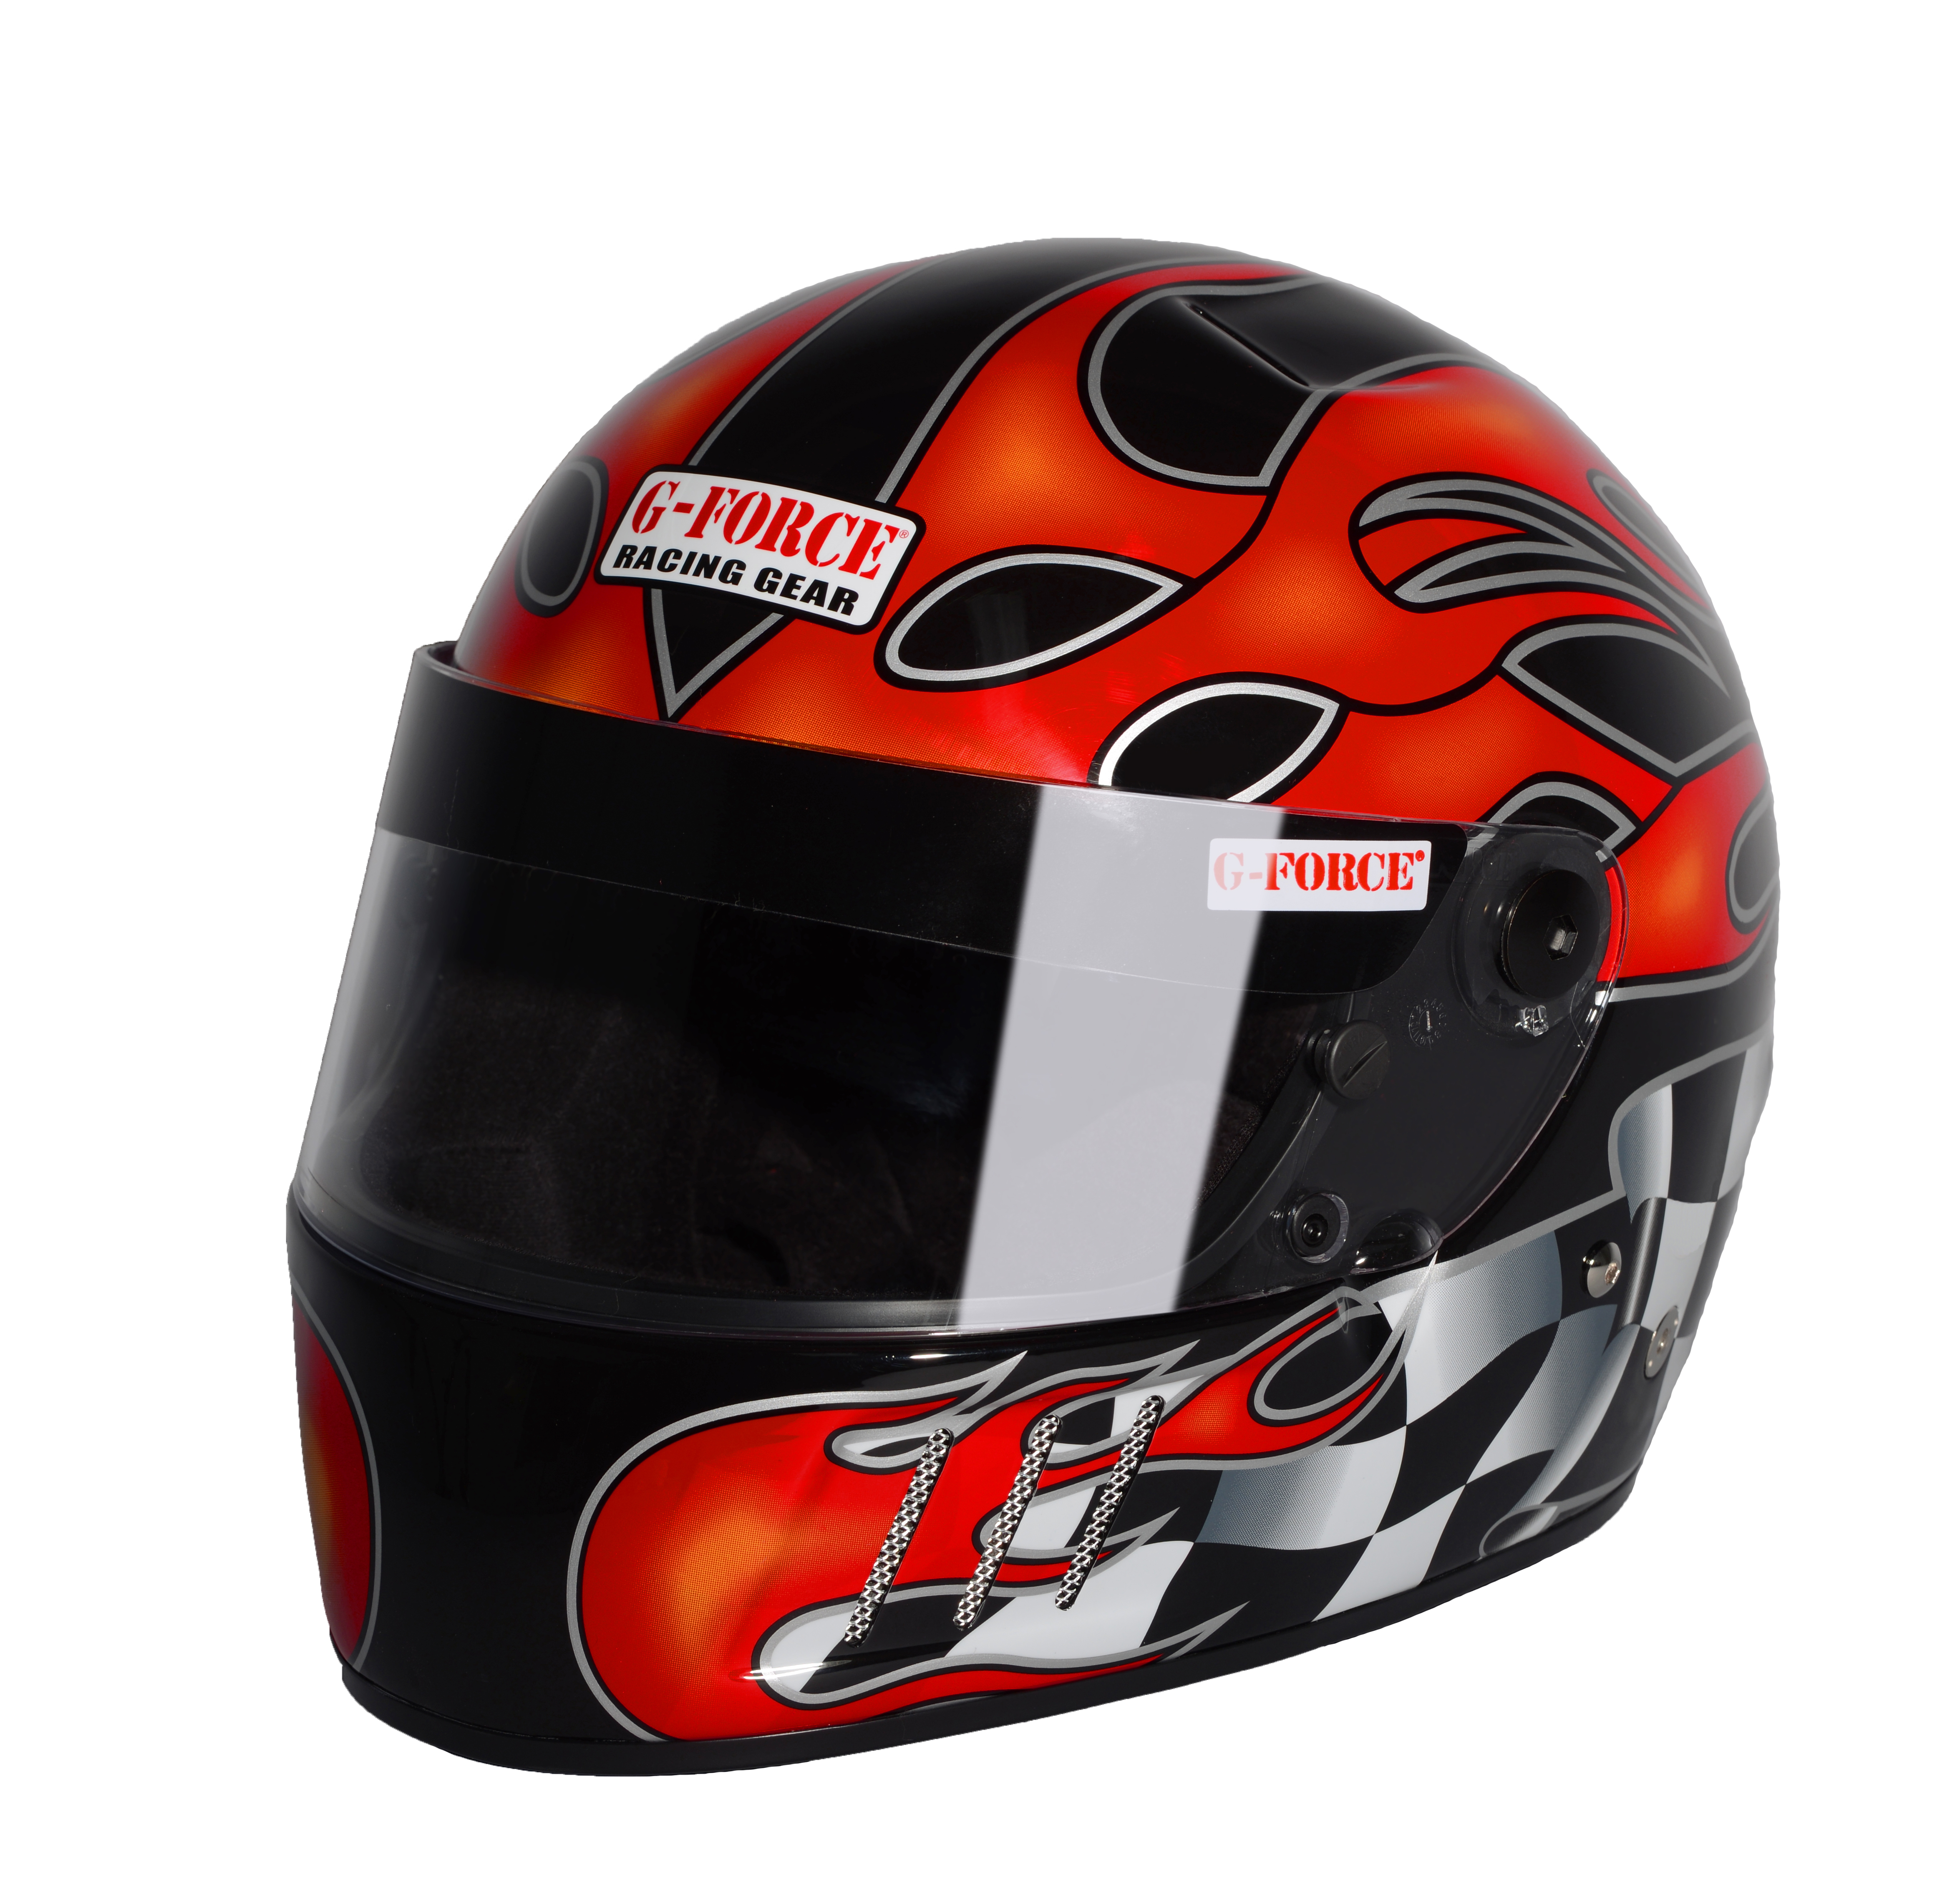 G-Force Racing Gear Helmet, PRO VINTAGE SA2010 FULL FACE MEDIUM MATTE